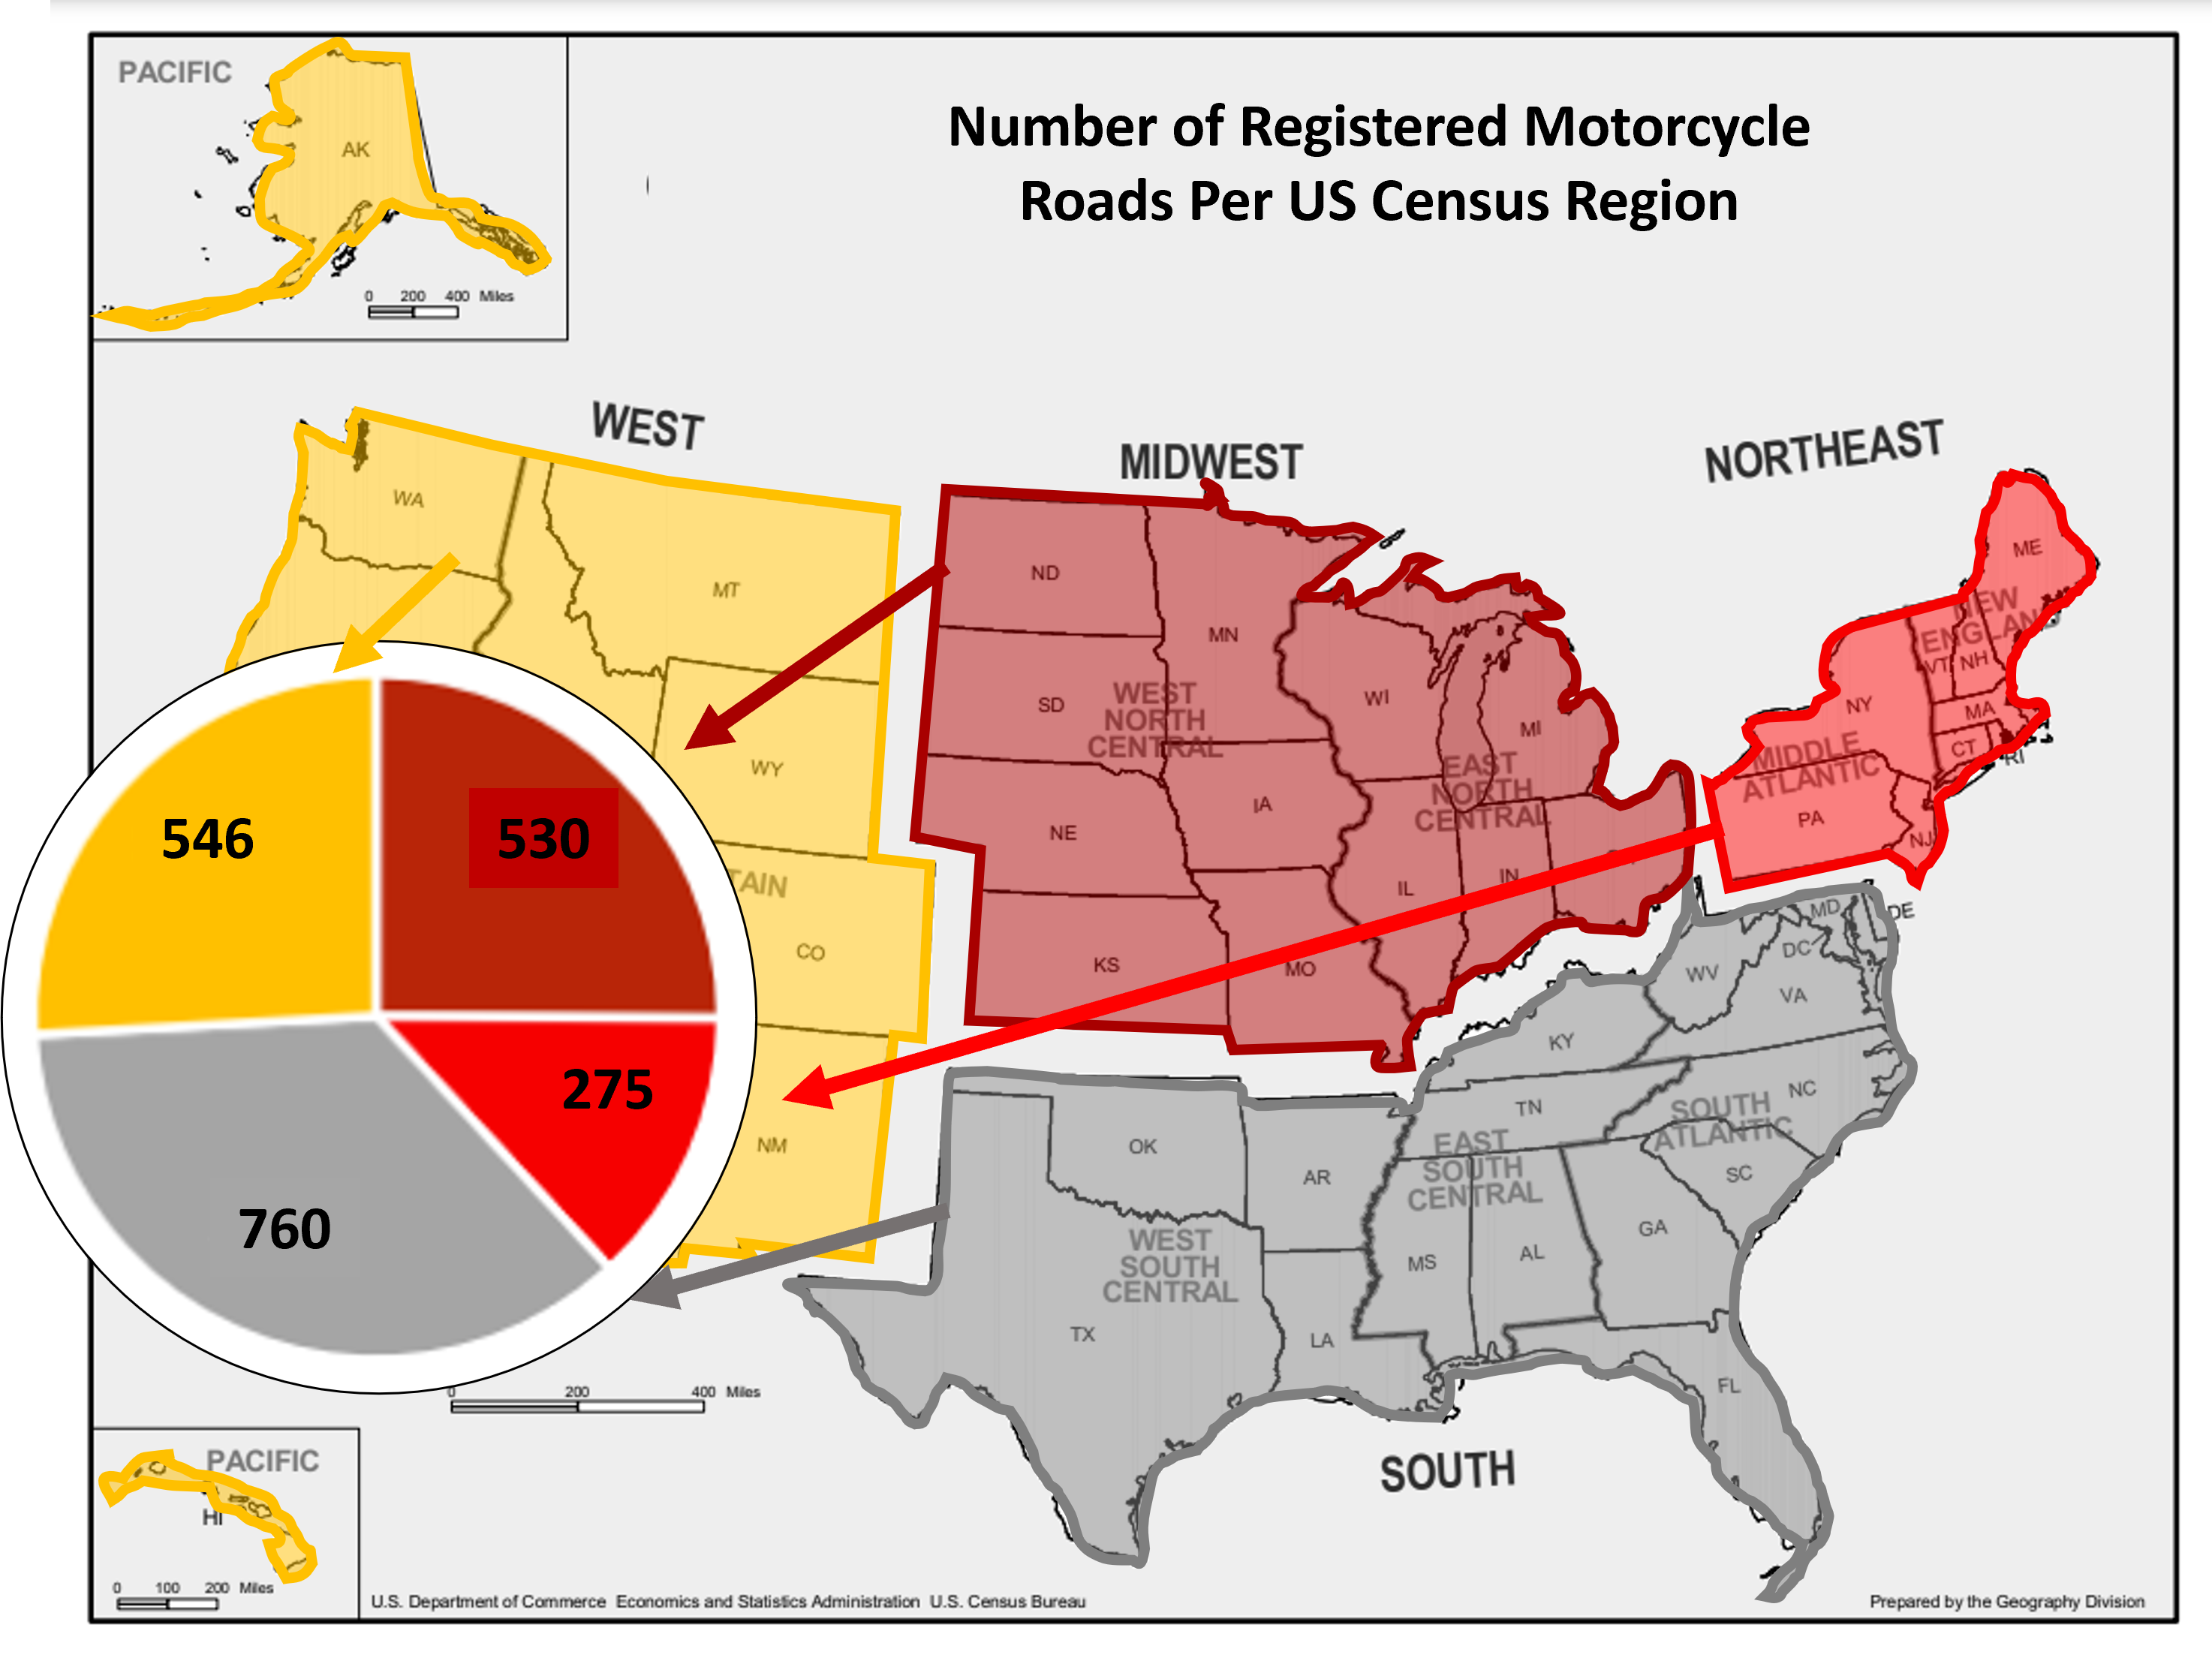 Number of registered motorcycle roads per US region in 2023